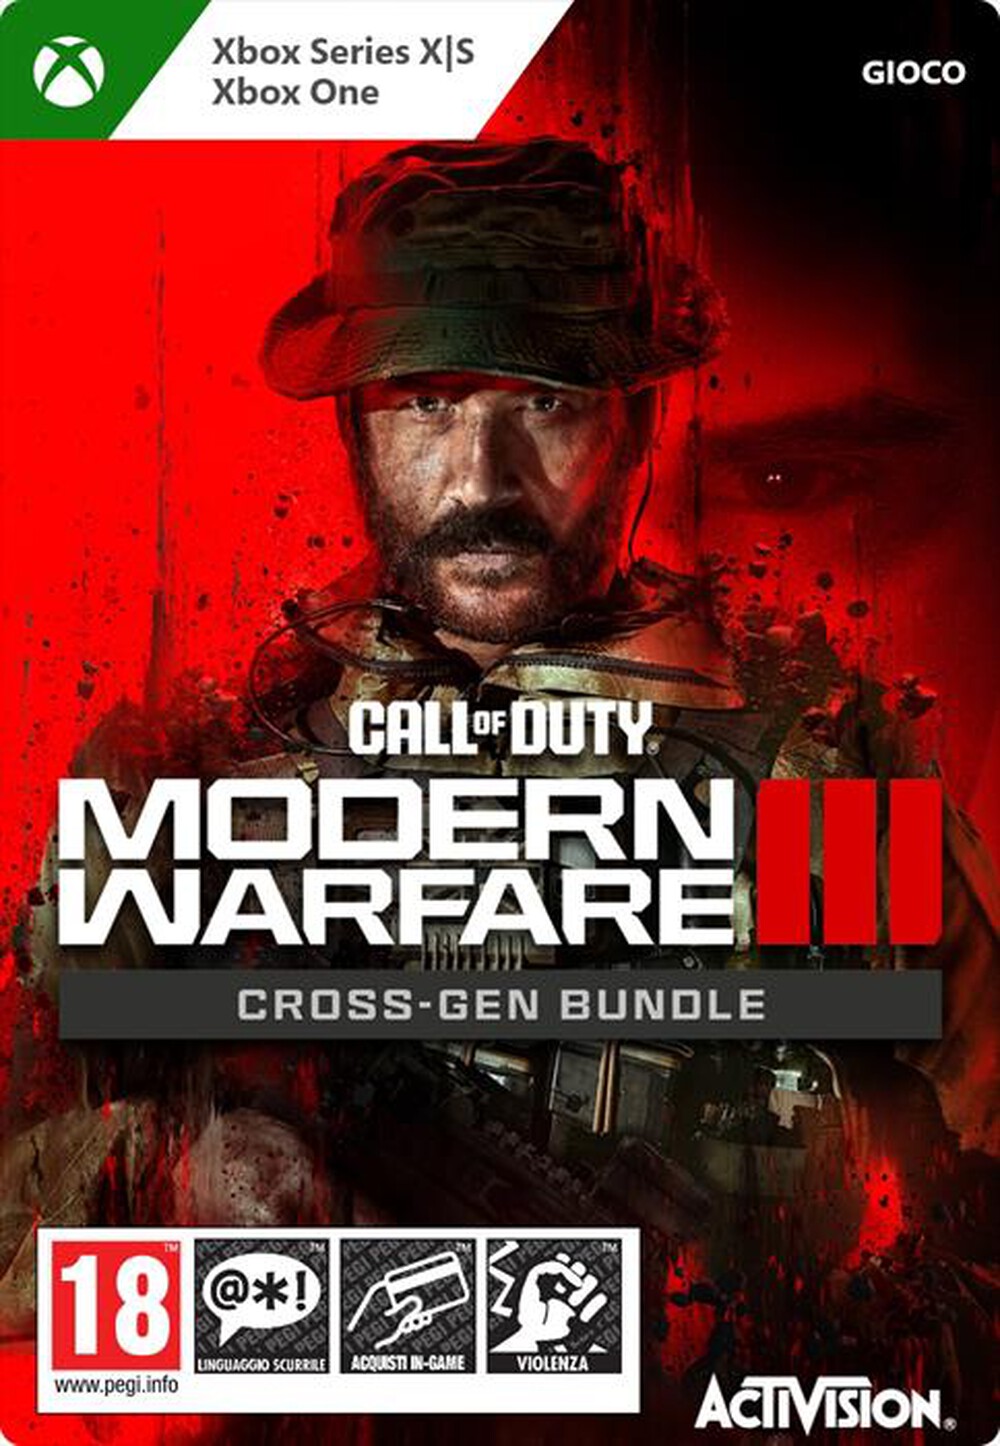 "MICROSOFT - Call of Duty Modern Warfare III Cross-Gen Bundle"